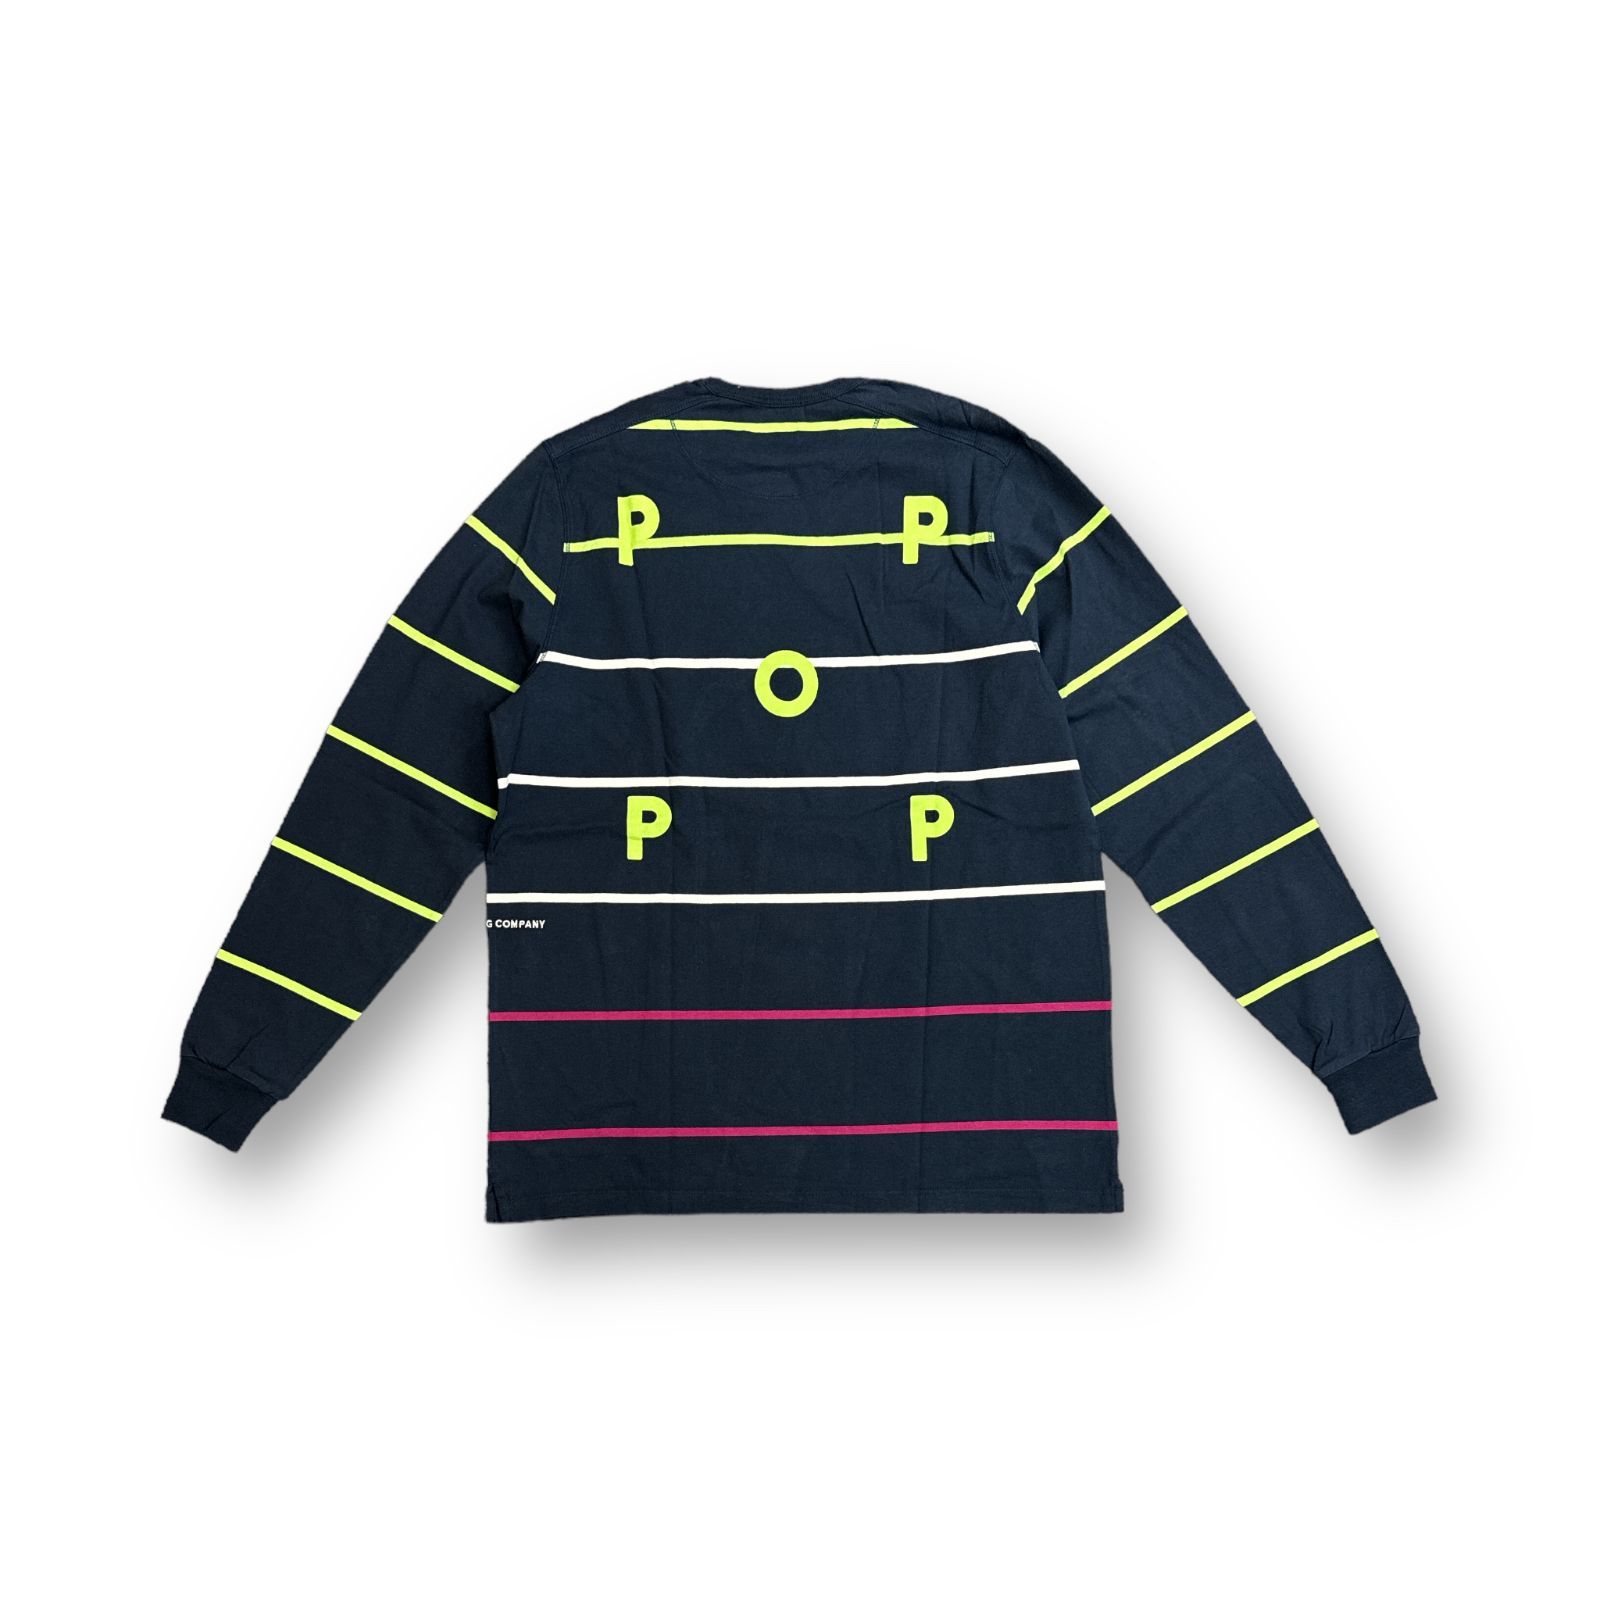 新品 POP TRADING COMPANY 23SS longsleeve t-shirt ロングスリーブ Tシャツ ボーダー カットソー ポップトレーディングカンパニー POPSS23_02-008  ネイビー M  61307A3